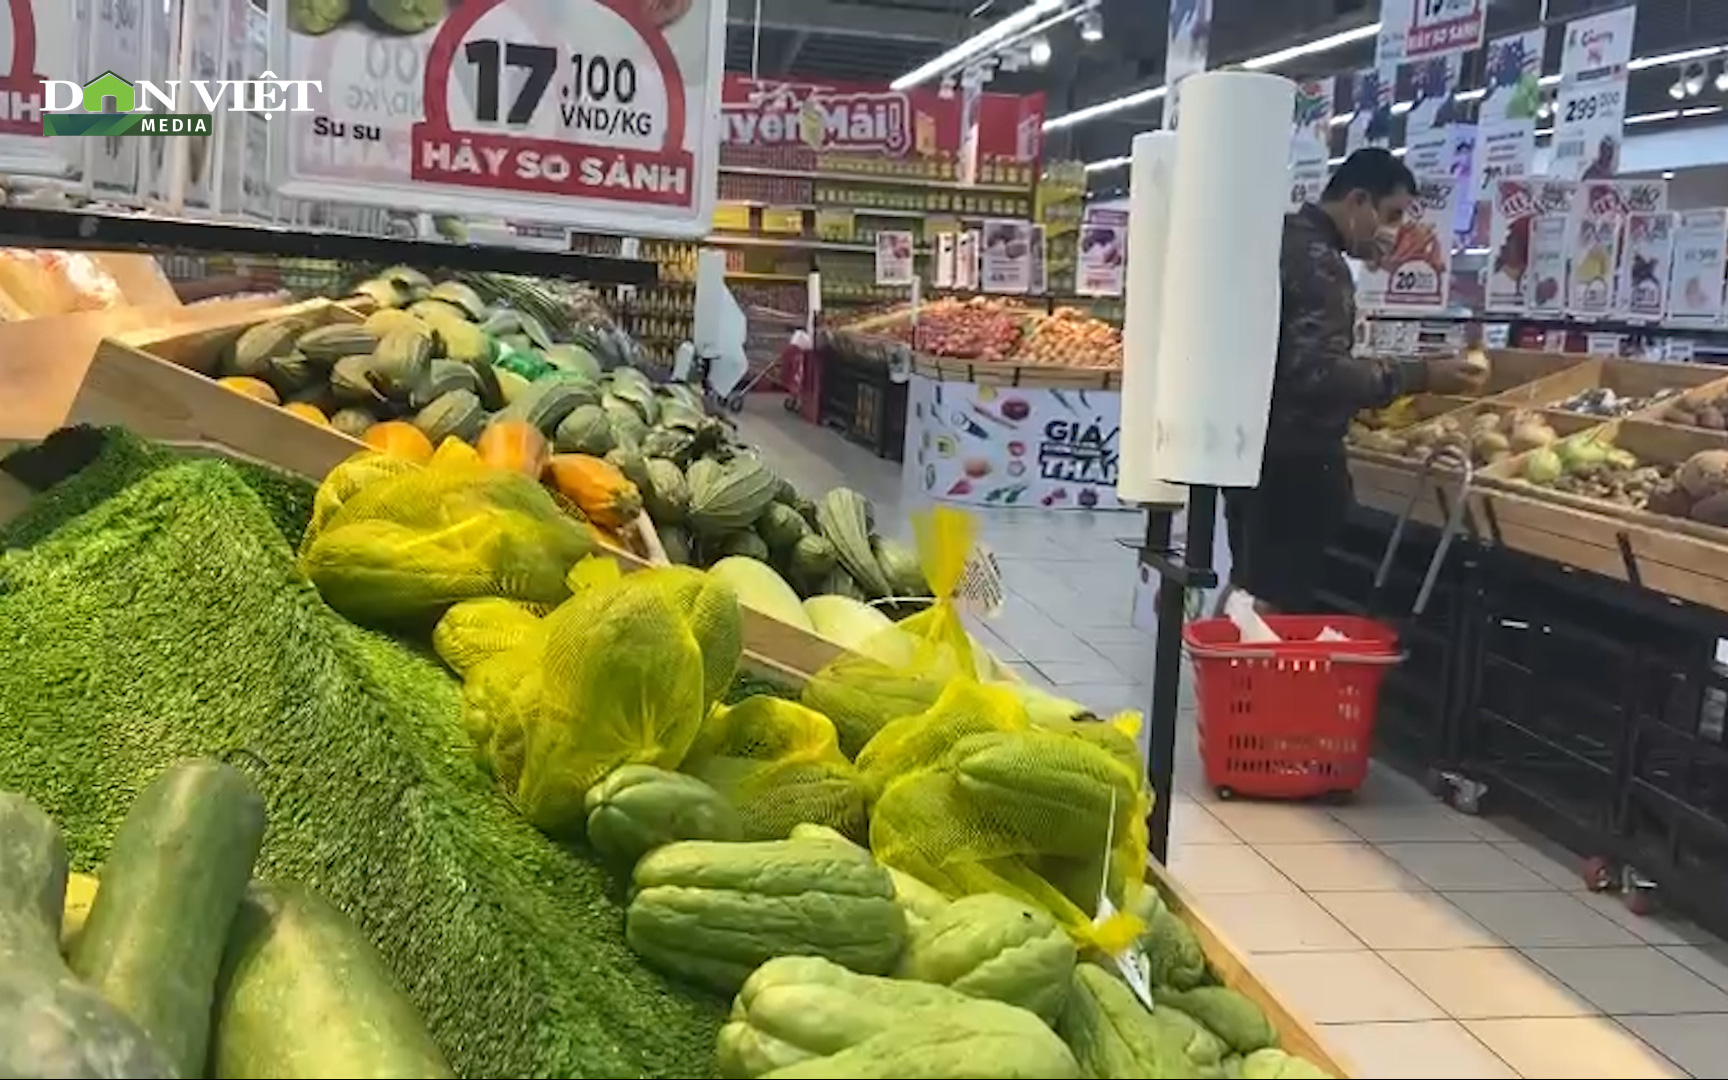 Đồng Nai: Chợ và siêu thị chất đầy hàng cung ứng cho người dân giữa “bão dịch Covid-19”